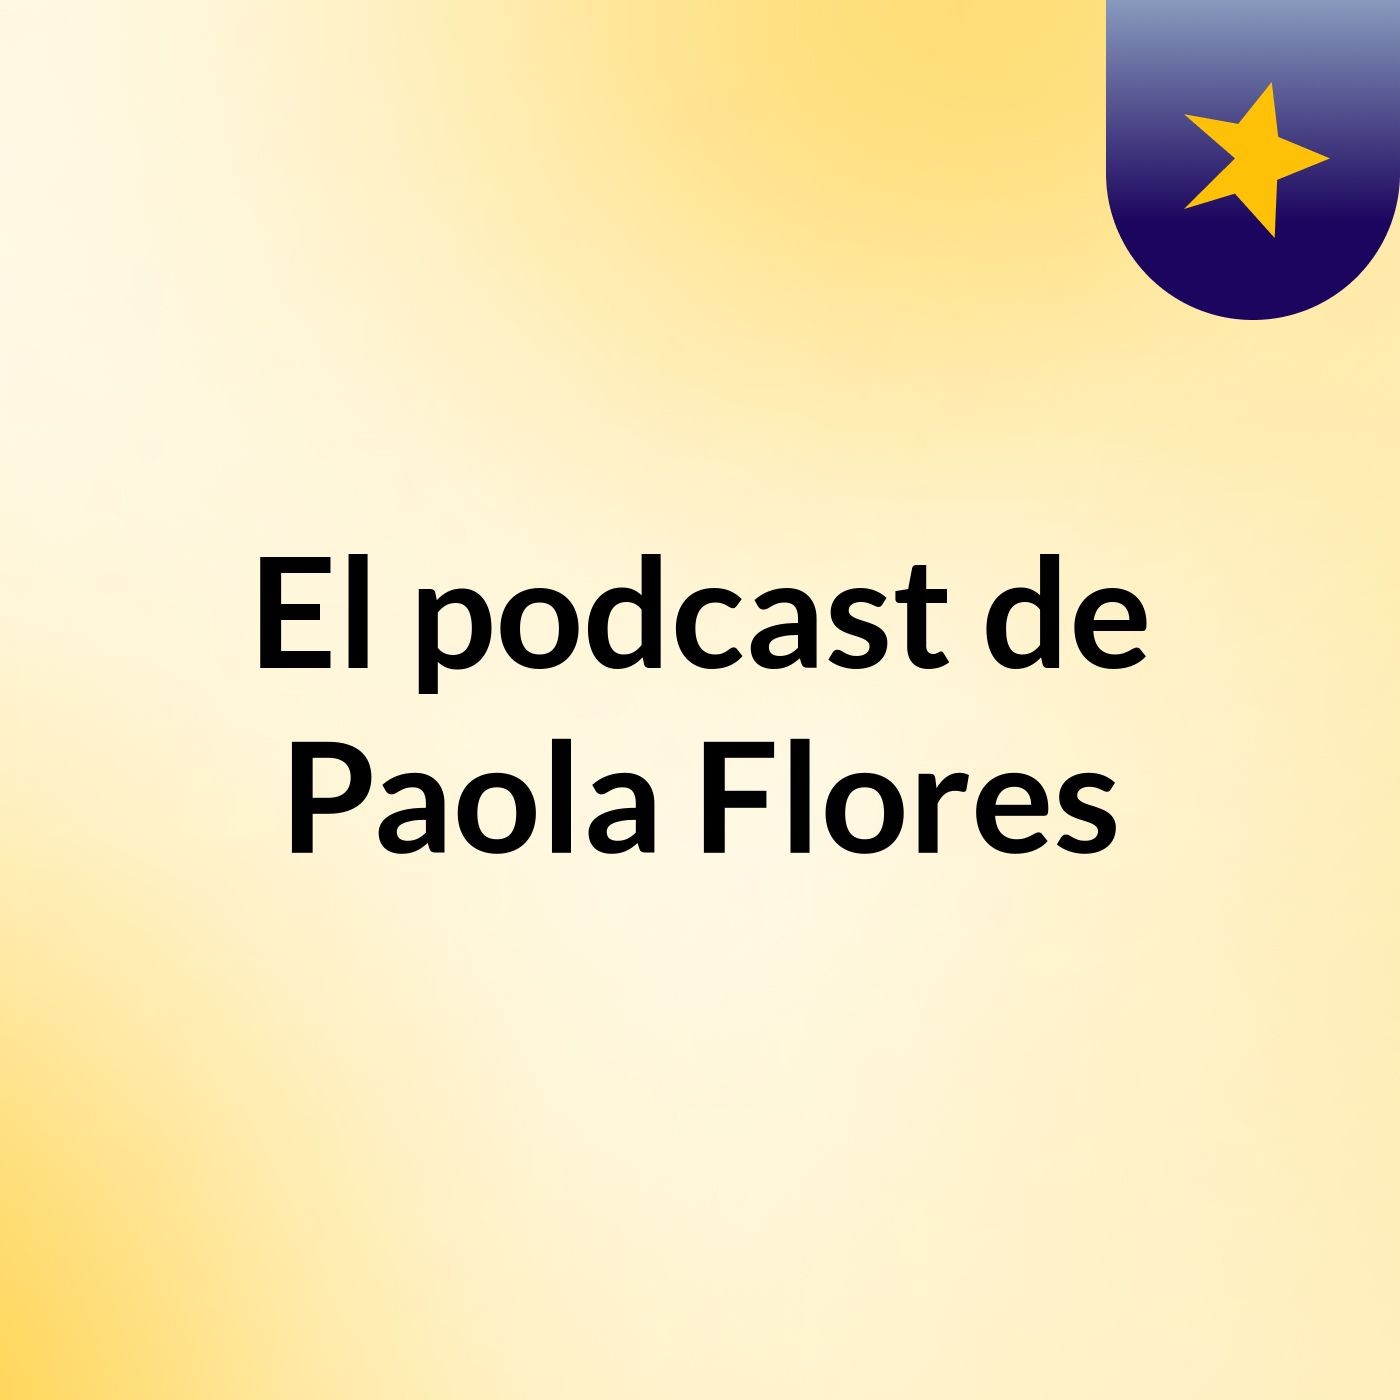 El podcast de Paola Flores